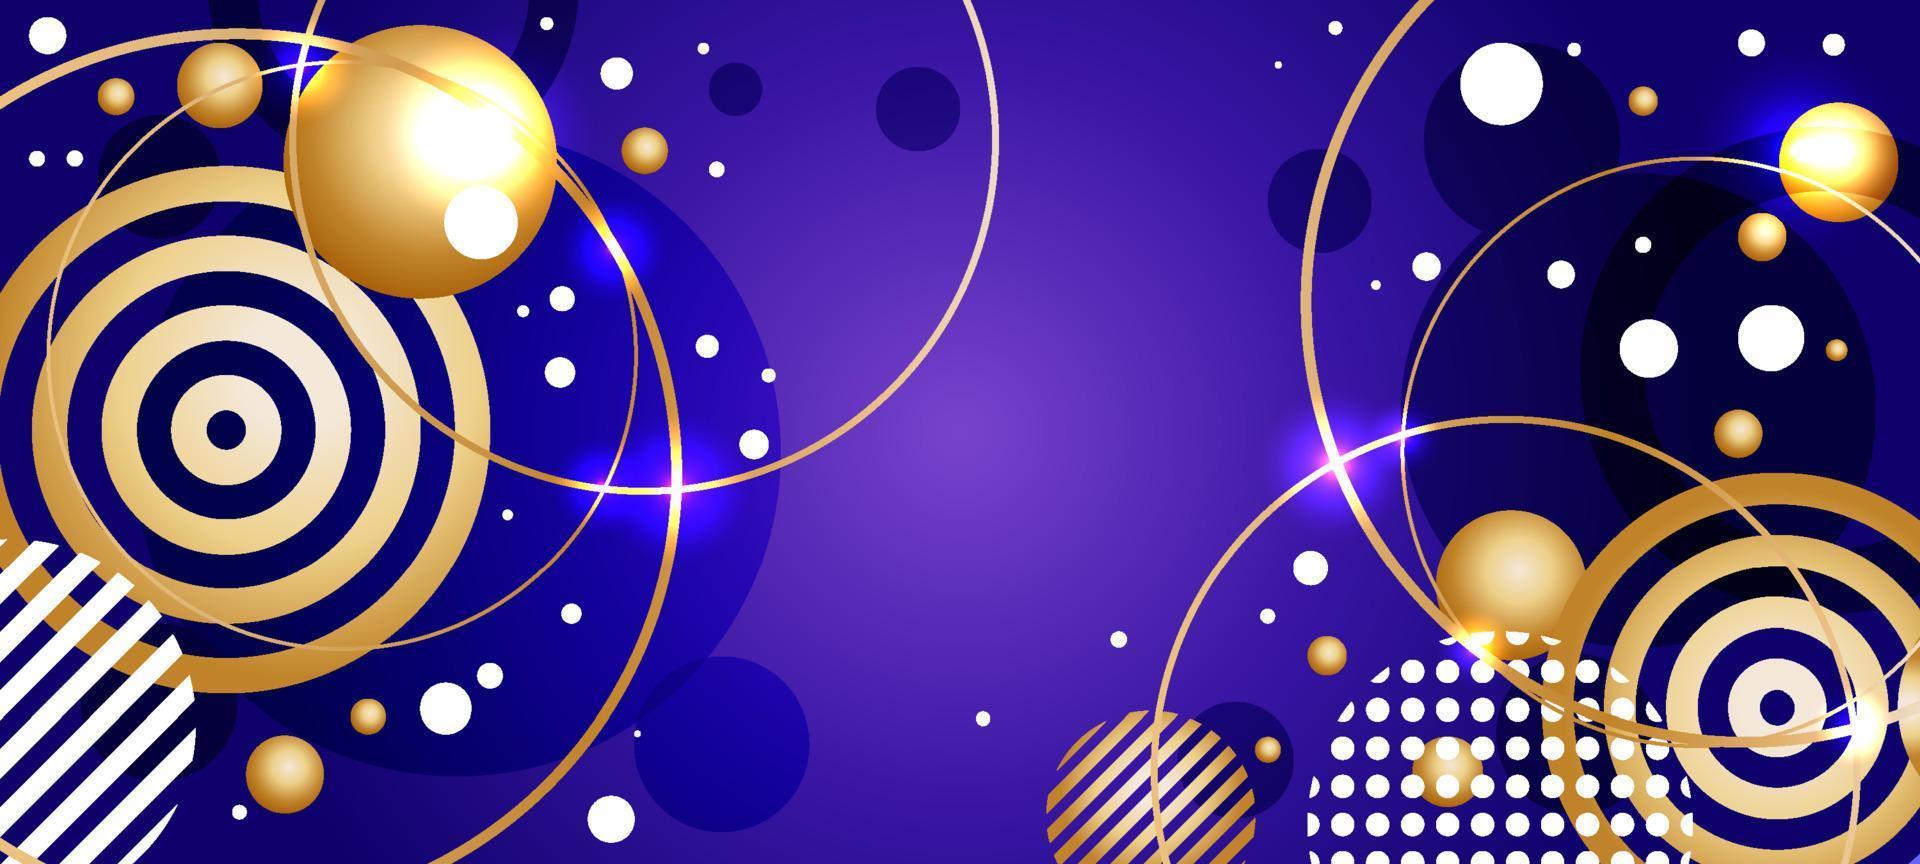 abstracte paarse en gouden cirkel achtergrond vector